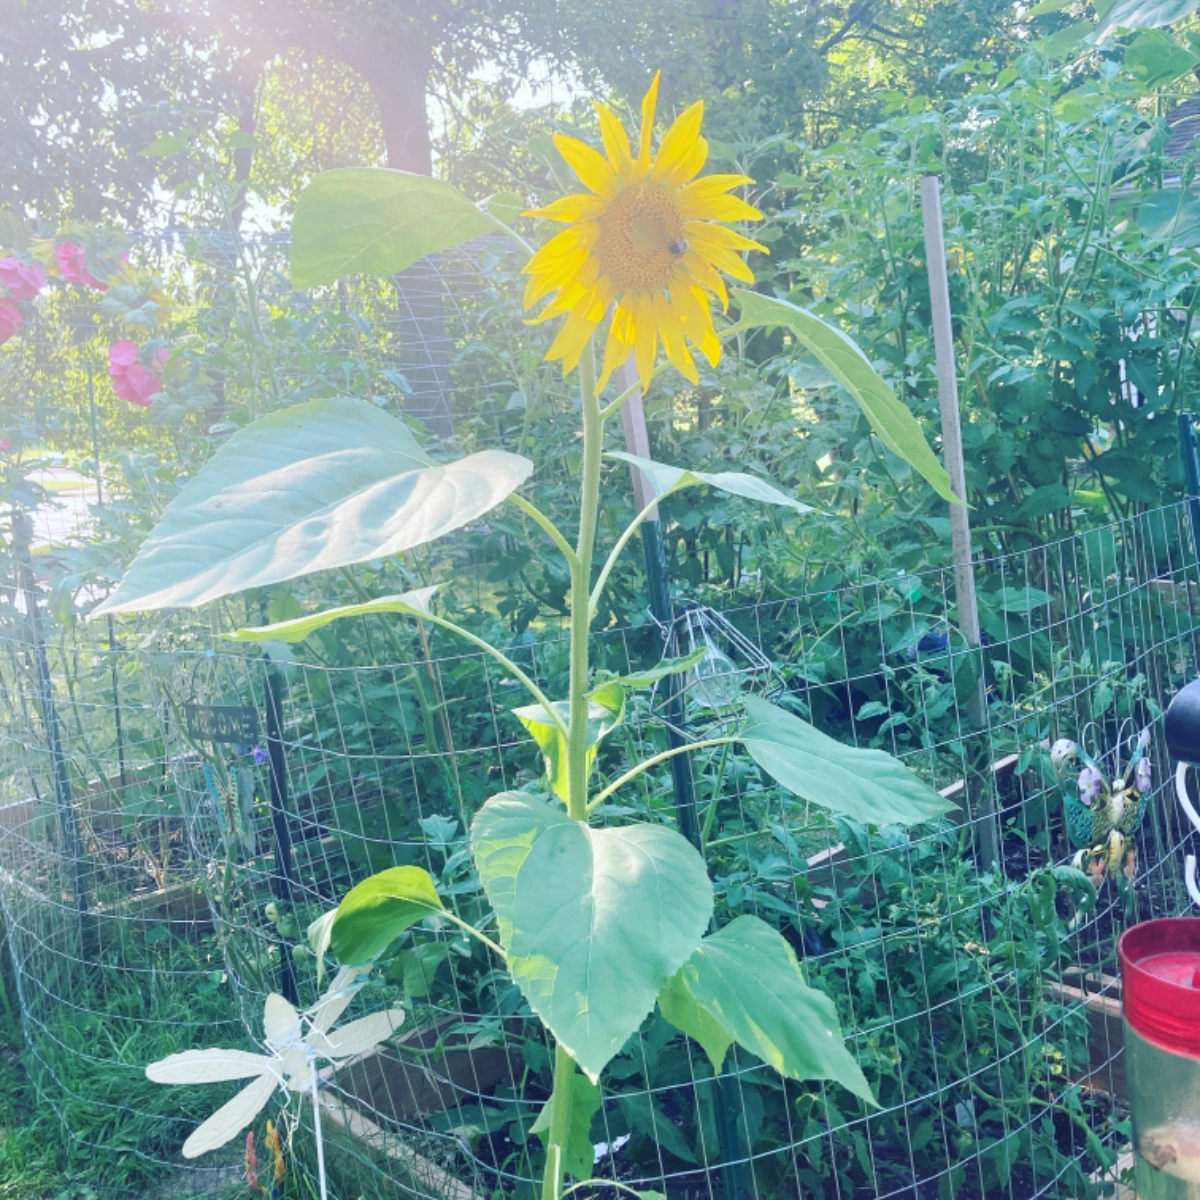 mammoth-sunflower-seeds-